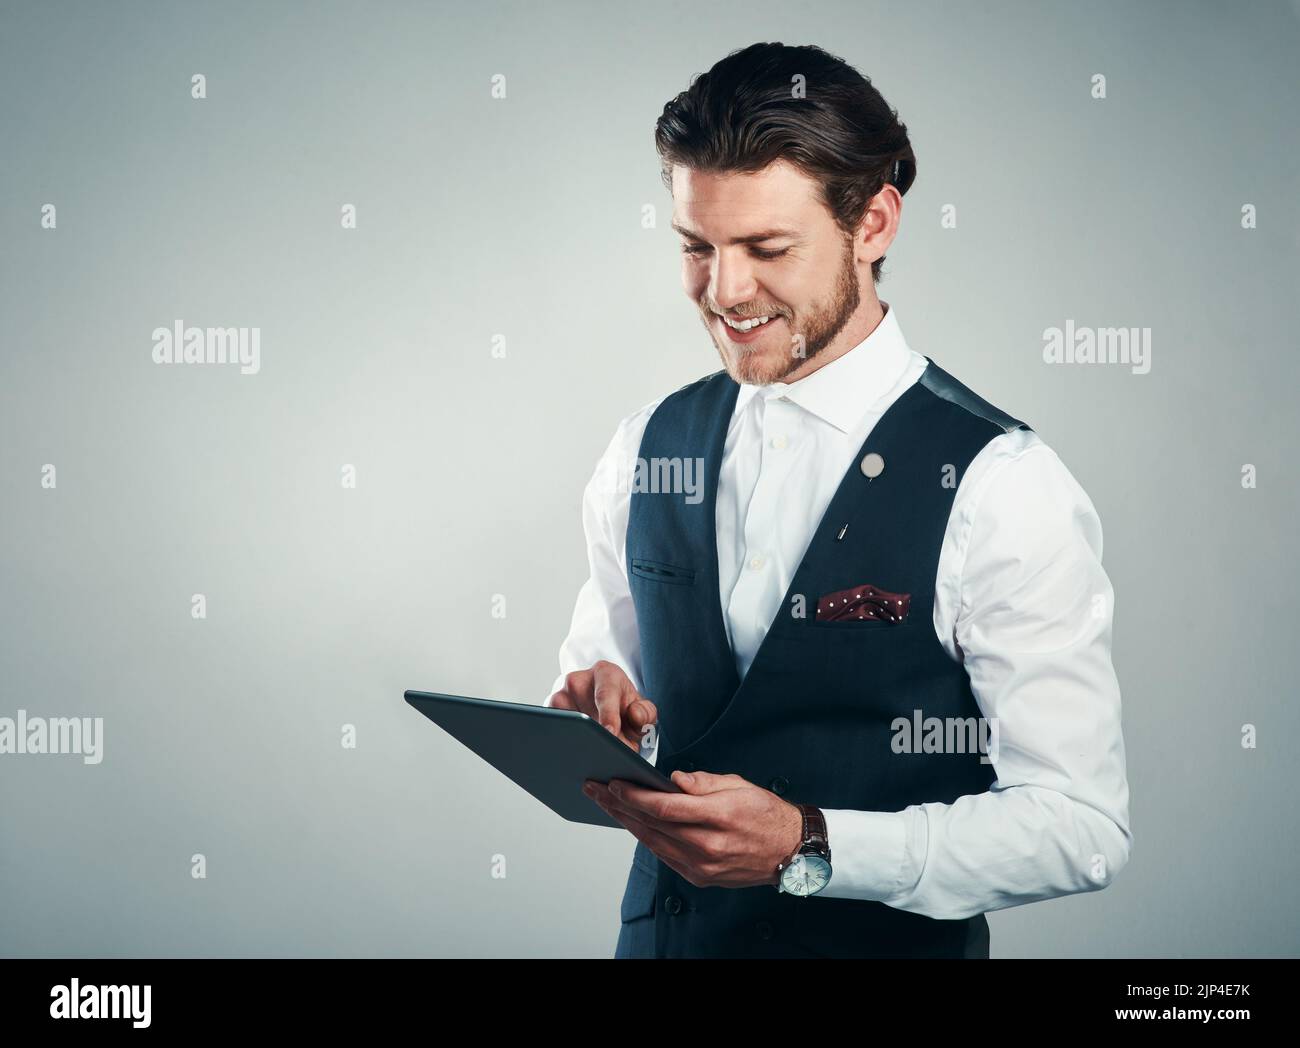 Le succès d'aujourd'hui repose sur la technologie. Studio photo d'un beau jeune homme d'affaires utilisant une tablette sur fond gris. Banque D'Images